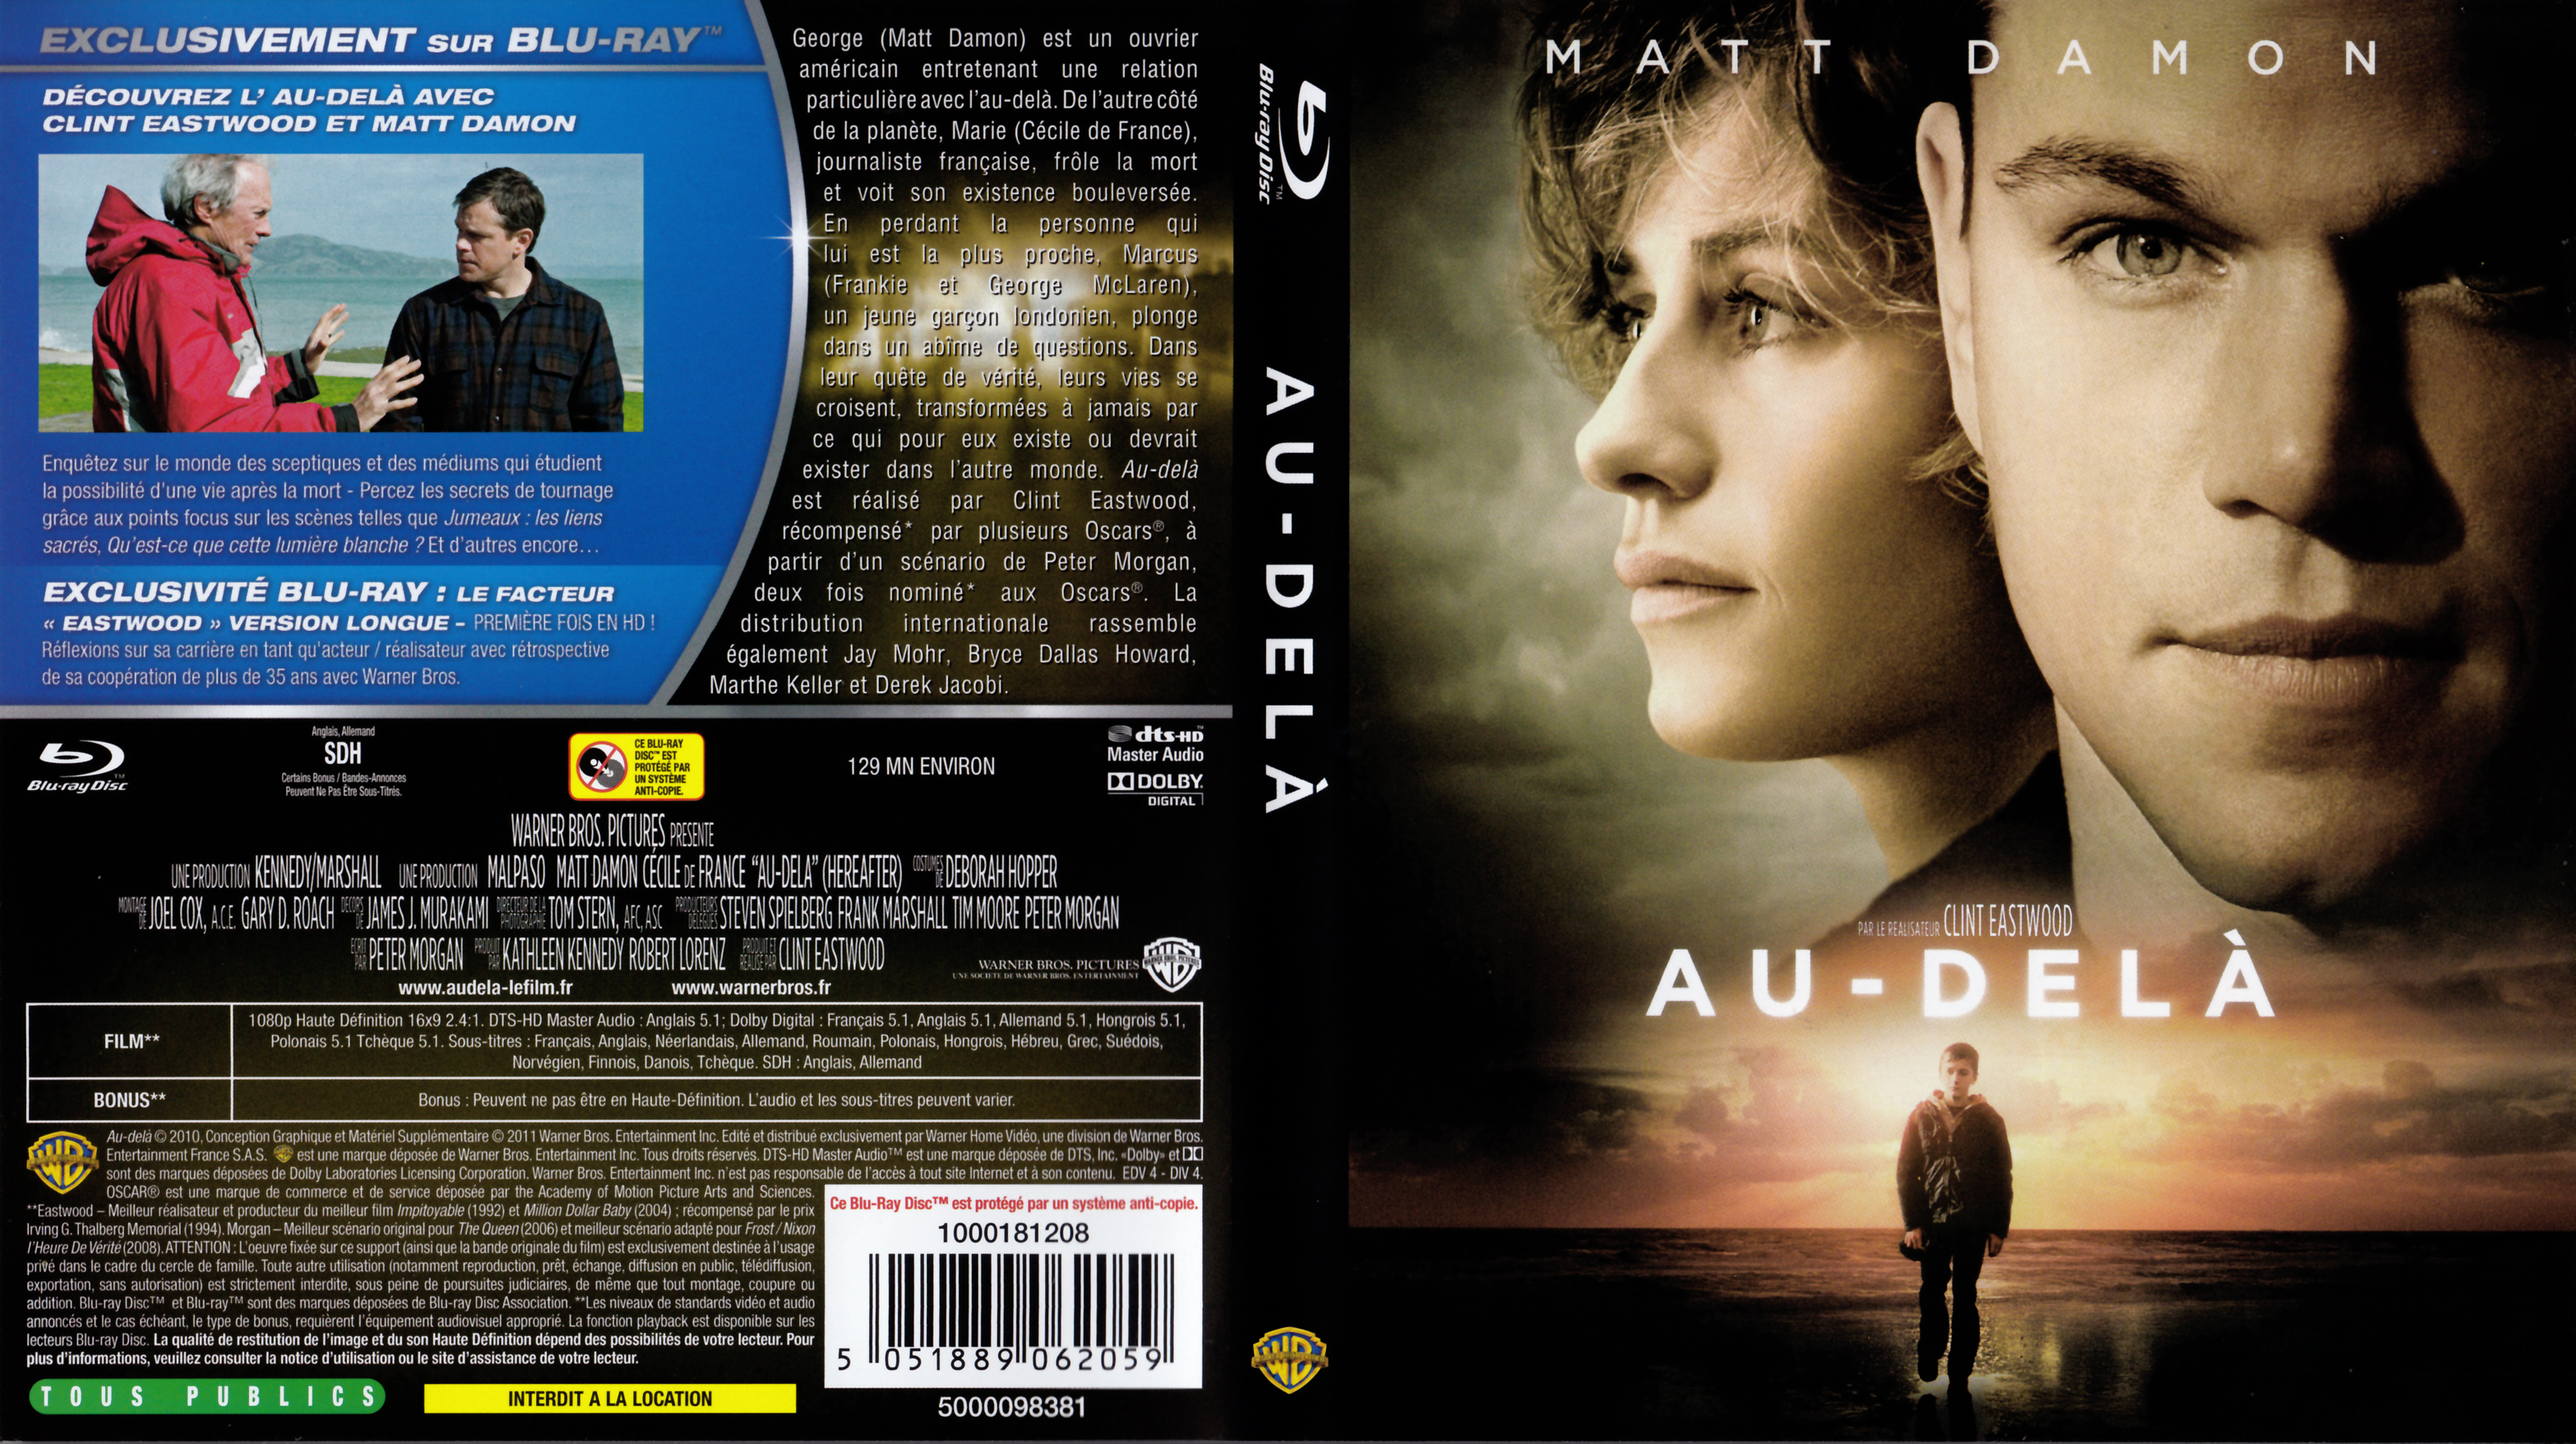 Jaquette DVD Au-del (BLU-RAY) v2